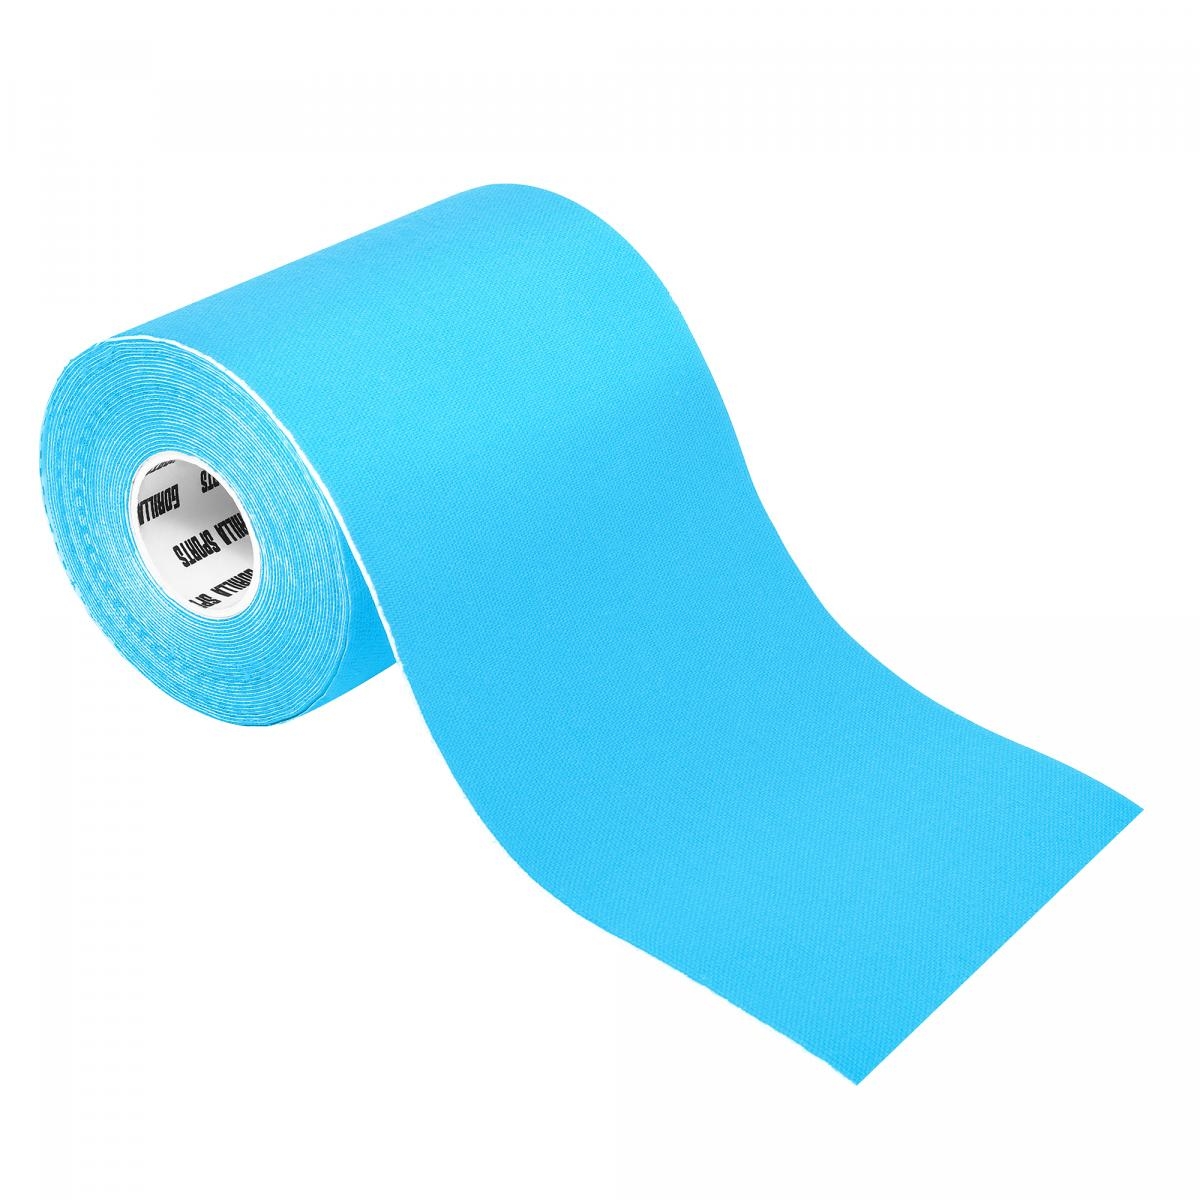 Bande de kinÃ©siologie bleue claire - rouleau de 5 m - Largeur : 10 cm